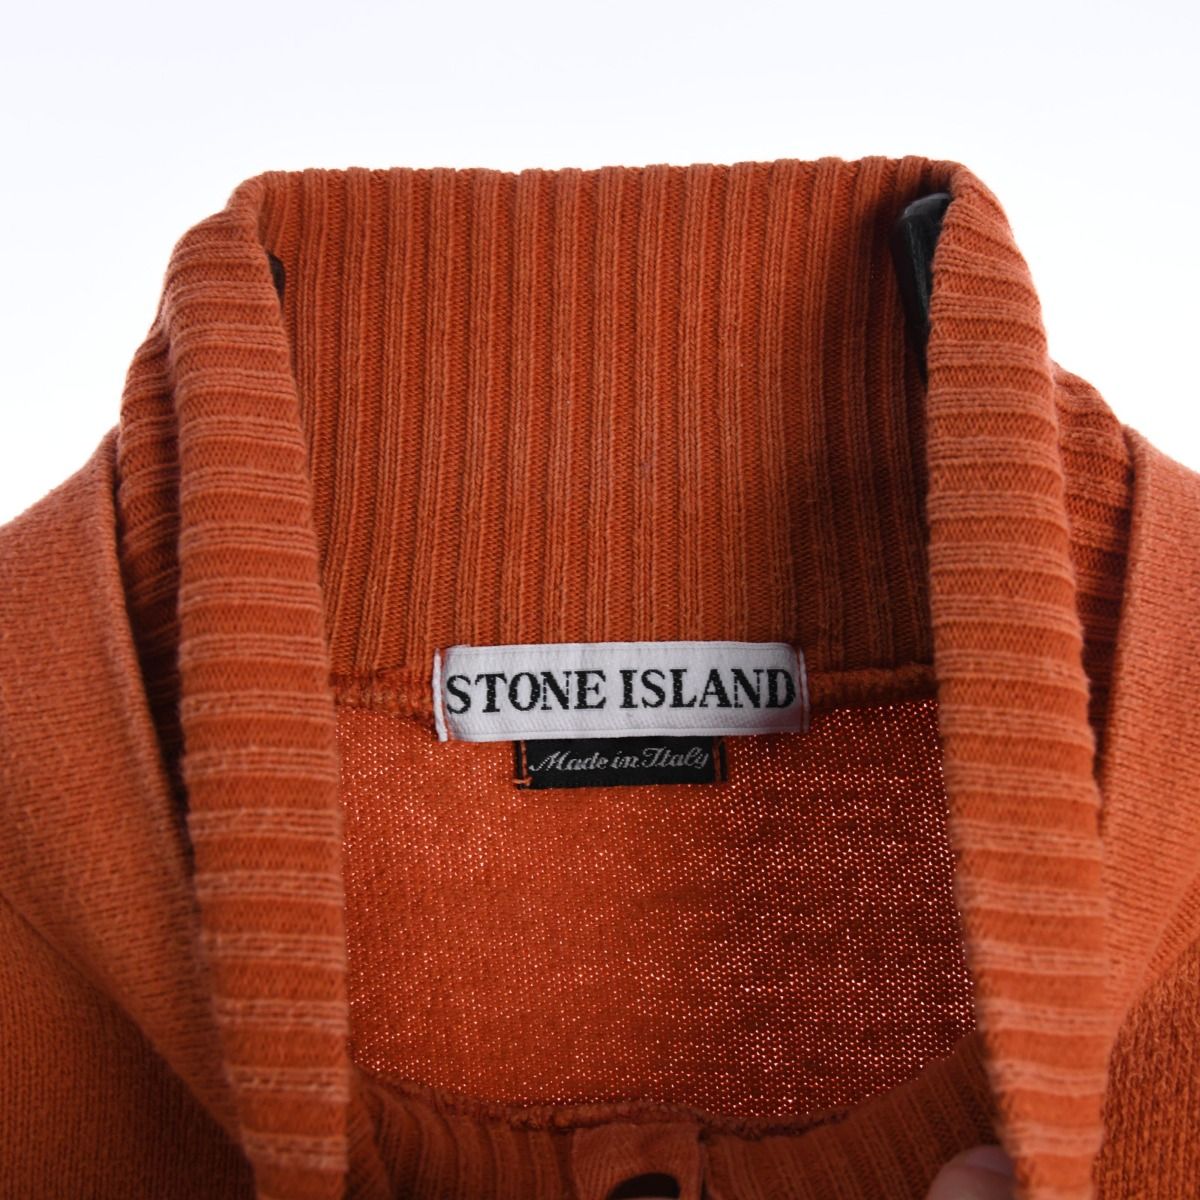 Stone Island A/W 1997 Sweatshirt